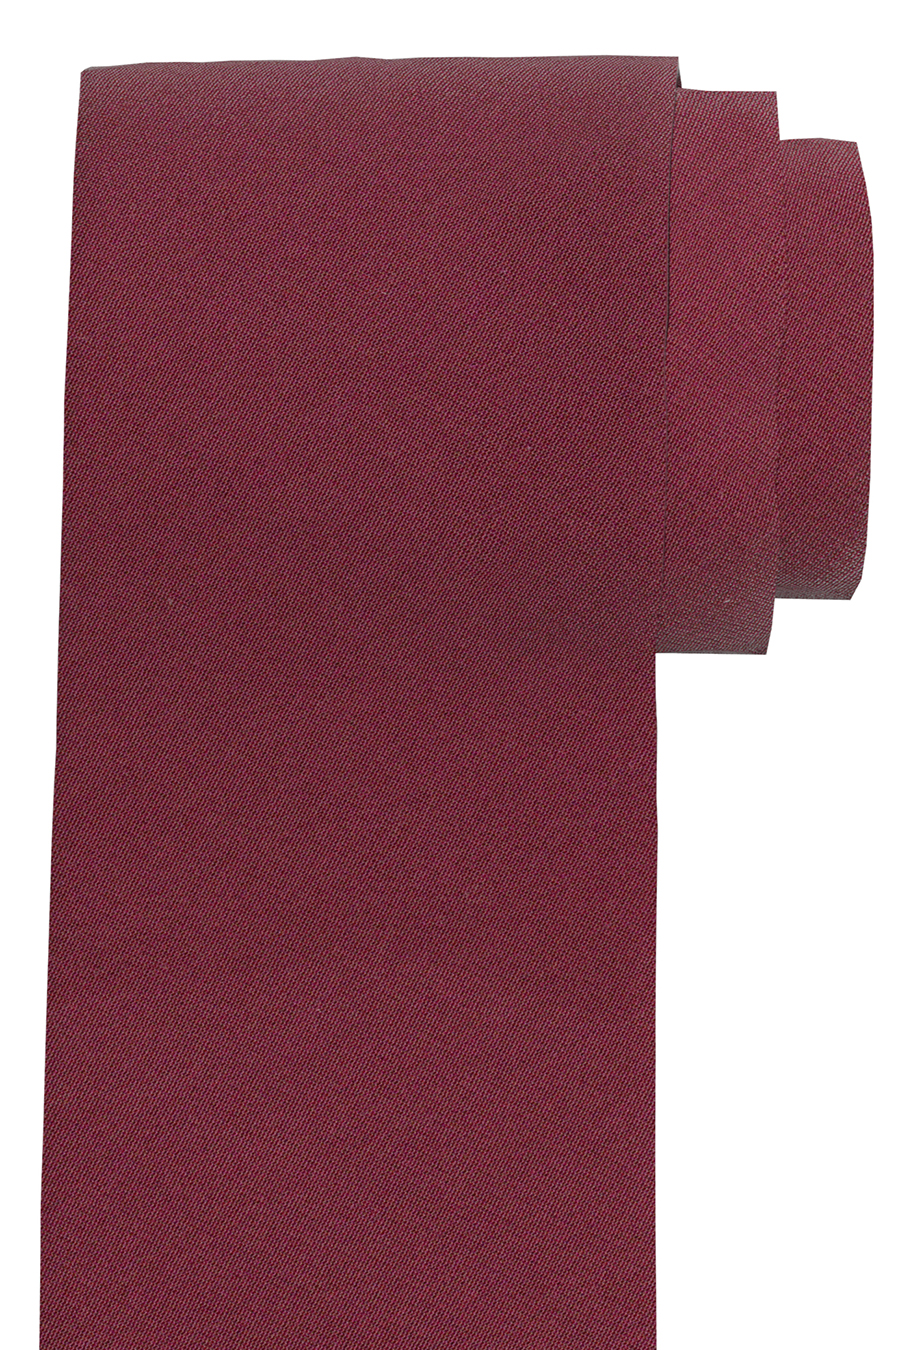 OLYMP Krawatte slim 6,5 cm weinrot breit Seide aus Fleckabweisend reiner